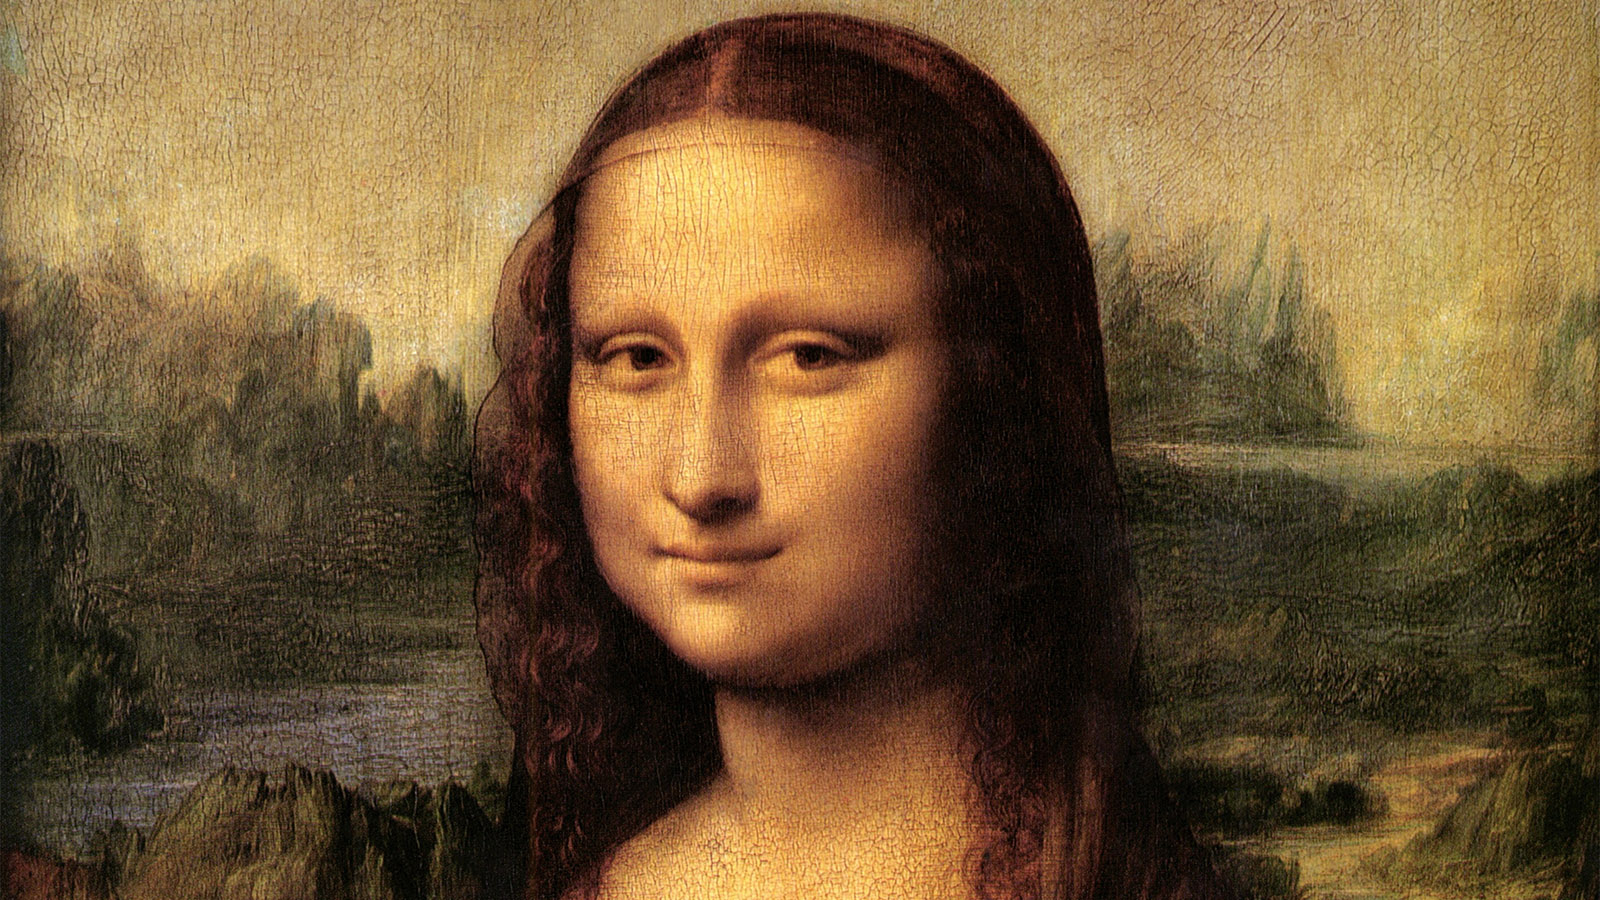 Раскрыт секрет шедевра Леонардо да Винчи «Мона Лиза». Новые детали | РБК Life